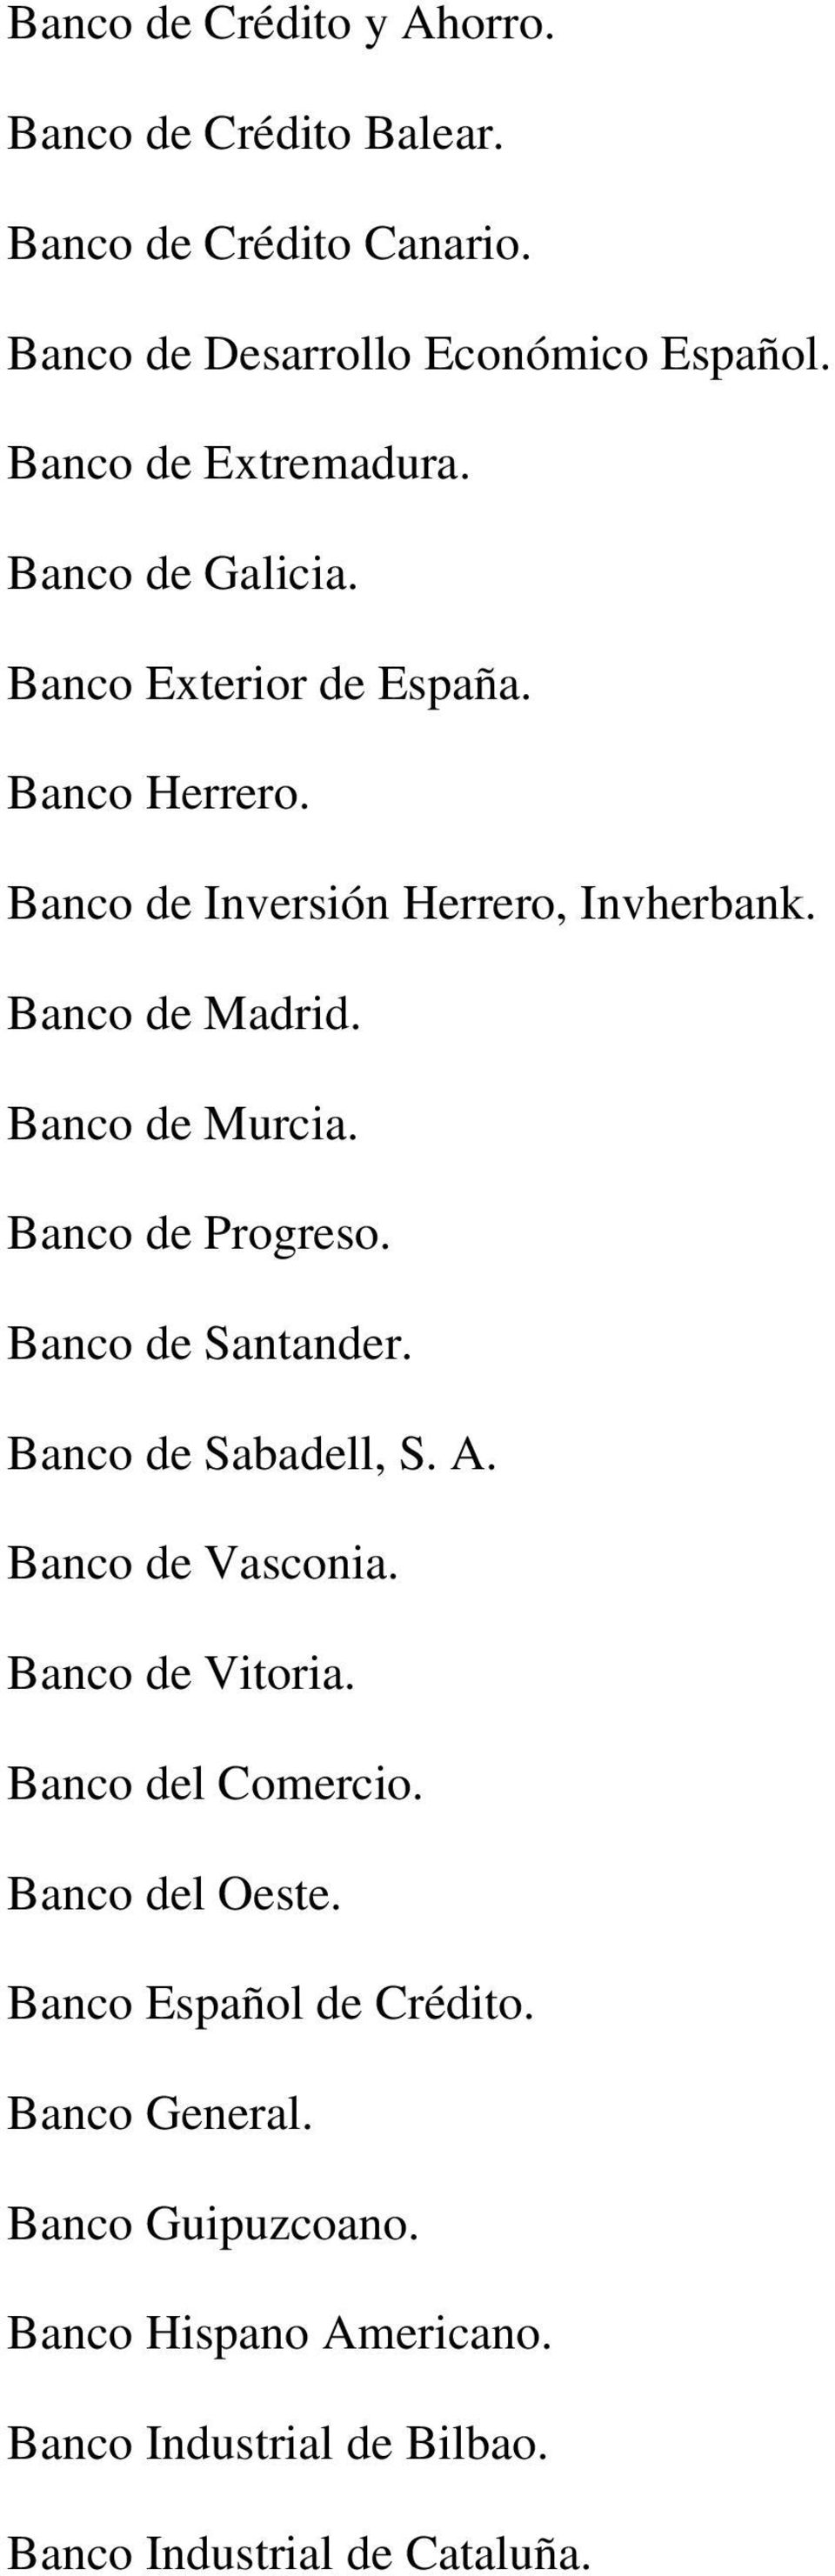 Banco de Progreso. Banco de Santander. Banco de Sabadell, S. A. Banco de Vasconia. Banco de Vitoria. Banco del Comercio. Banco del Oeste.